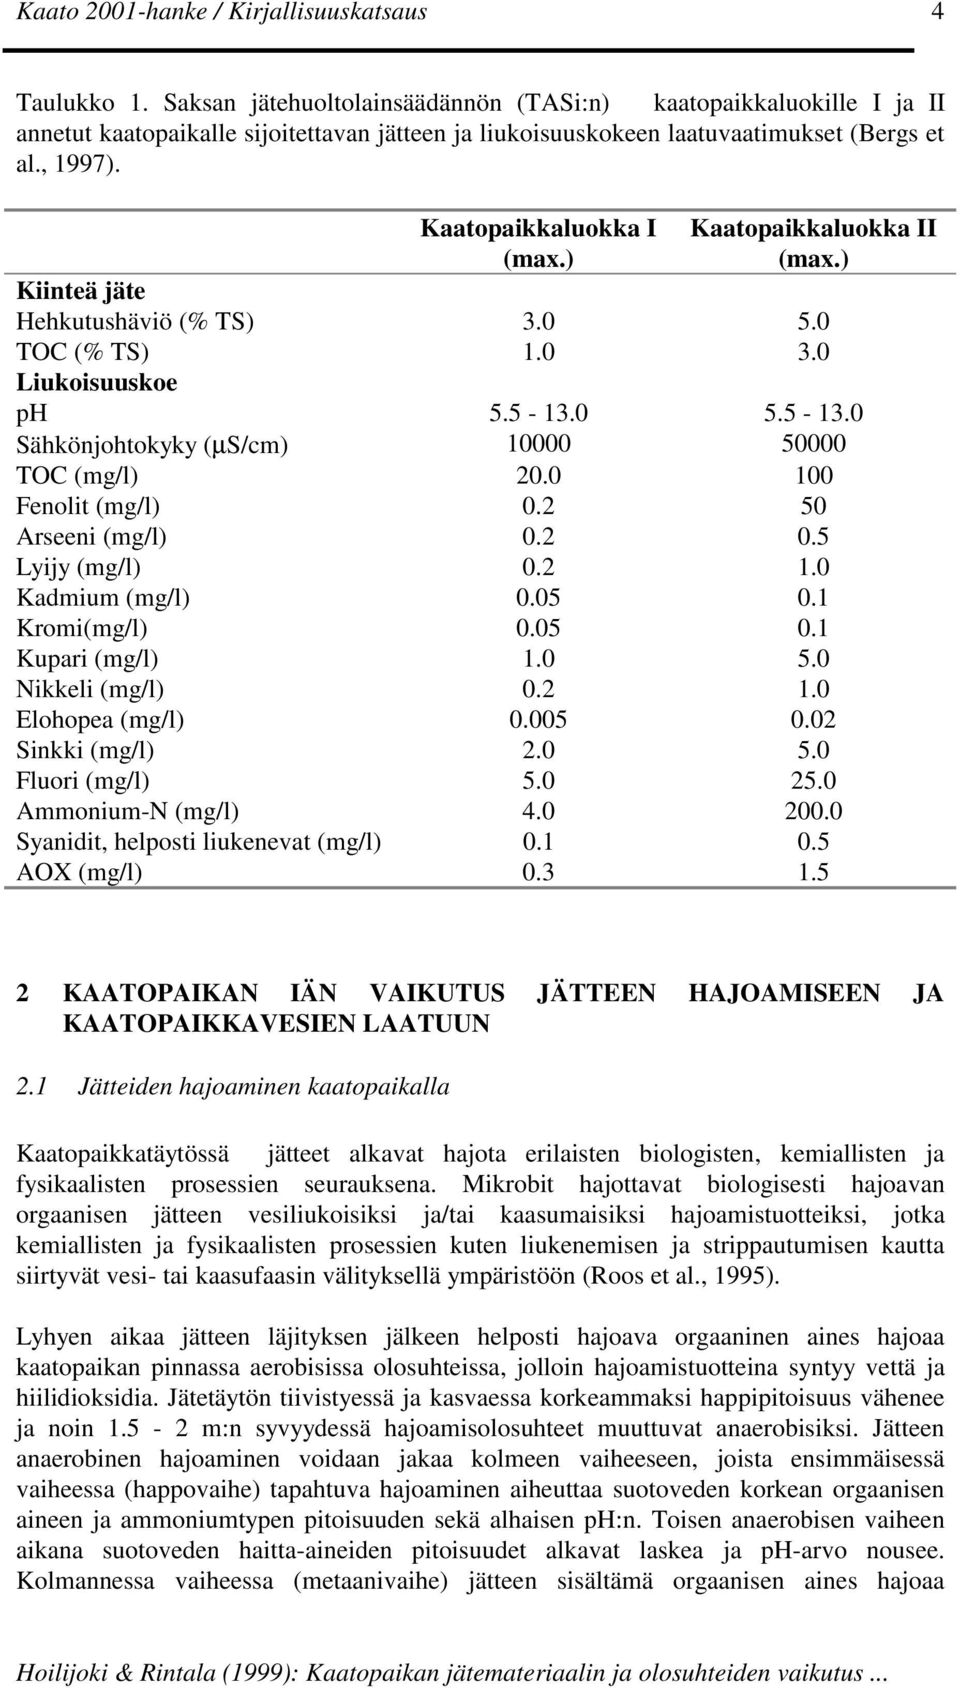 0 100 Fenolit (mg/l) 0.2 50 Arseeni (mg/l) 0.2 0.5 Lyijy (mg/l) 0.2 1.0 Kadmium (mg/l) 0.05 0.1 Kromi(mg/l) 0.05 0.1 Kupari (mg/l) 1.0 5.0 Nikkeli (mg/l) 0.2 1.0 Elohopea (mg/l) 0.005 0.